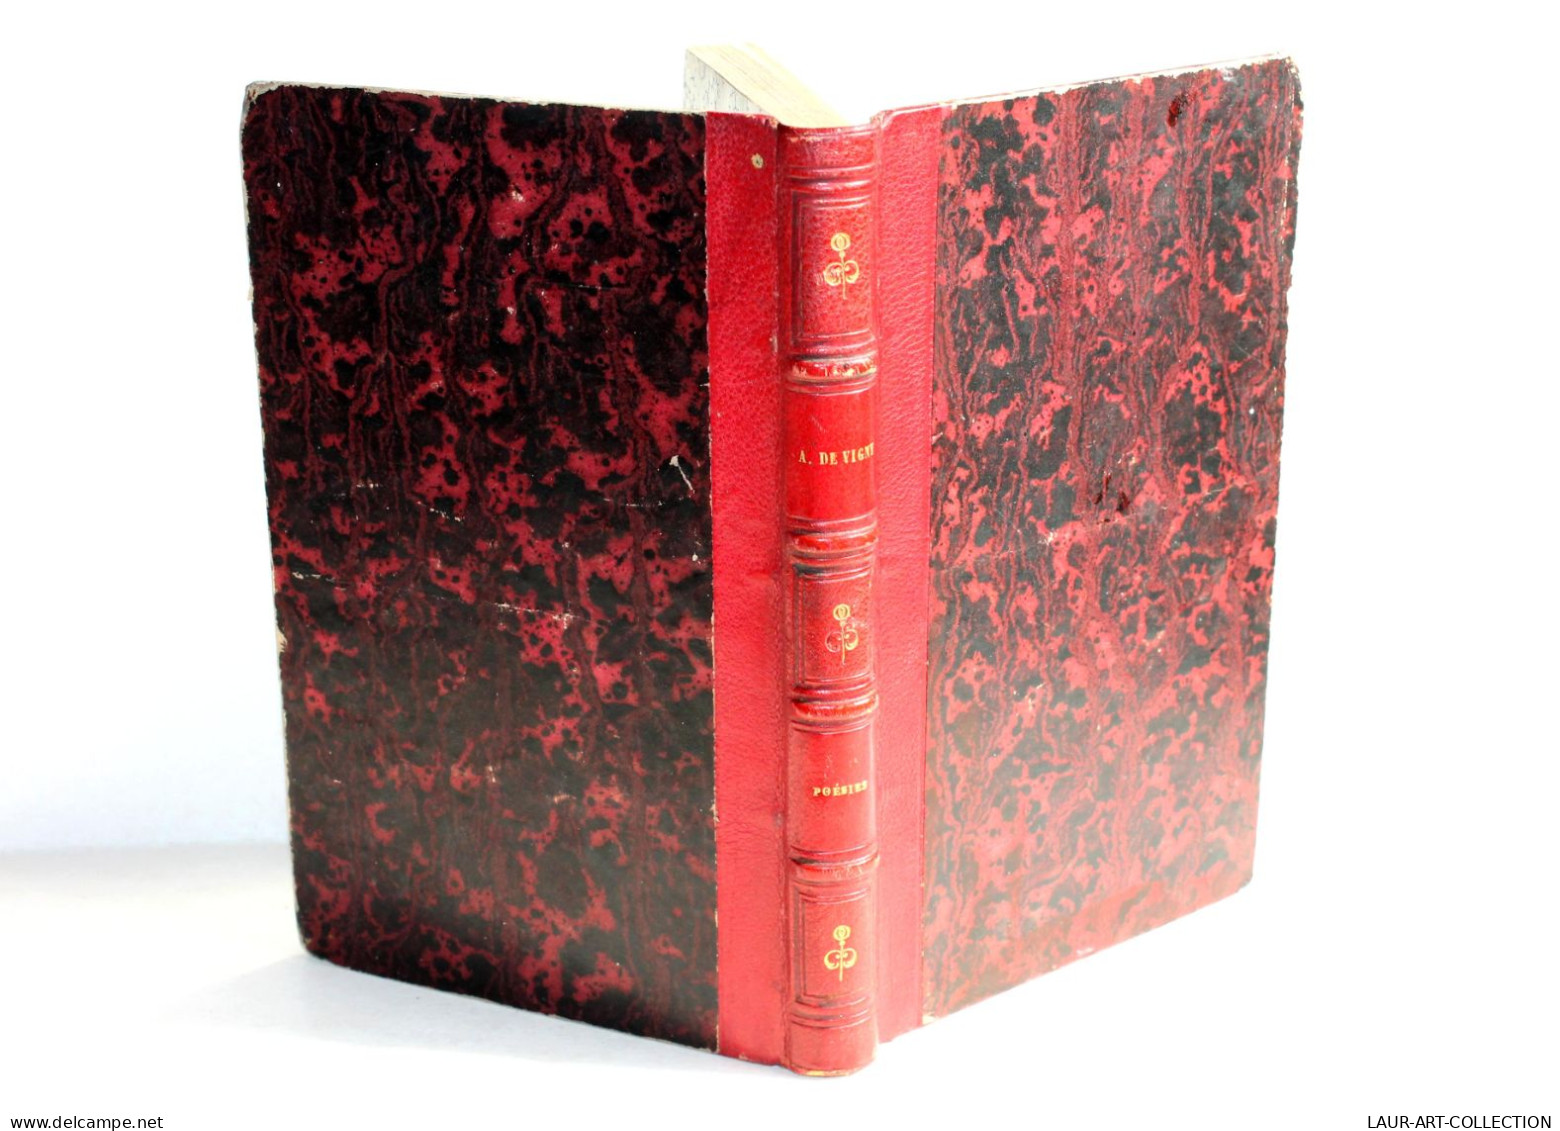 POESIES COMPLETES DU COMTE ALFRED DE VIGNY 6e EDITION 1852 CHARPENTIER / ANCIEN LIVRE FRANCAIS (1803.8) - French Authors